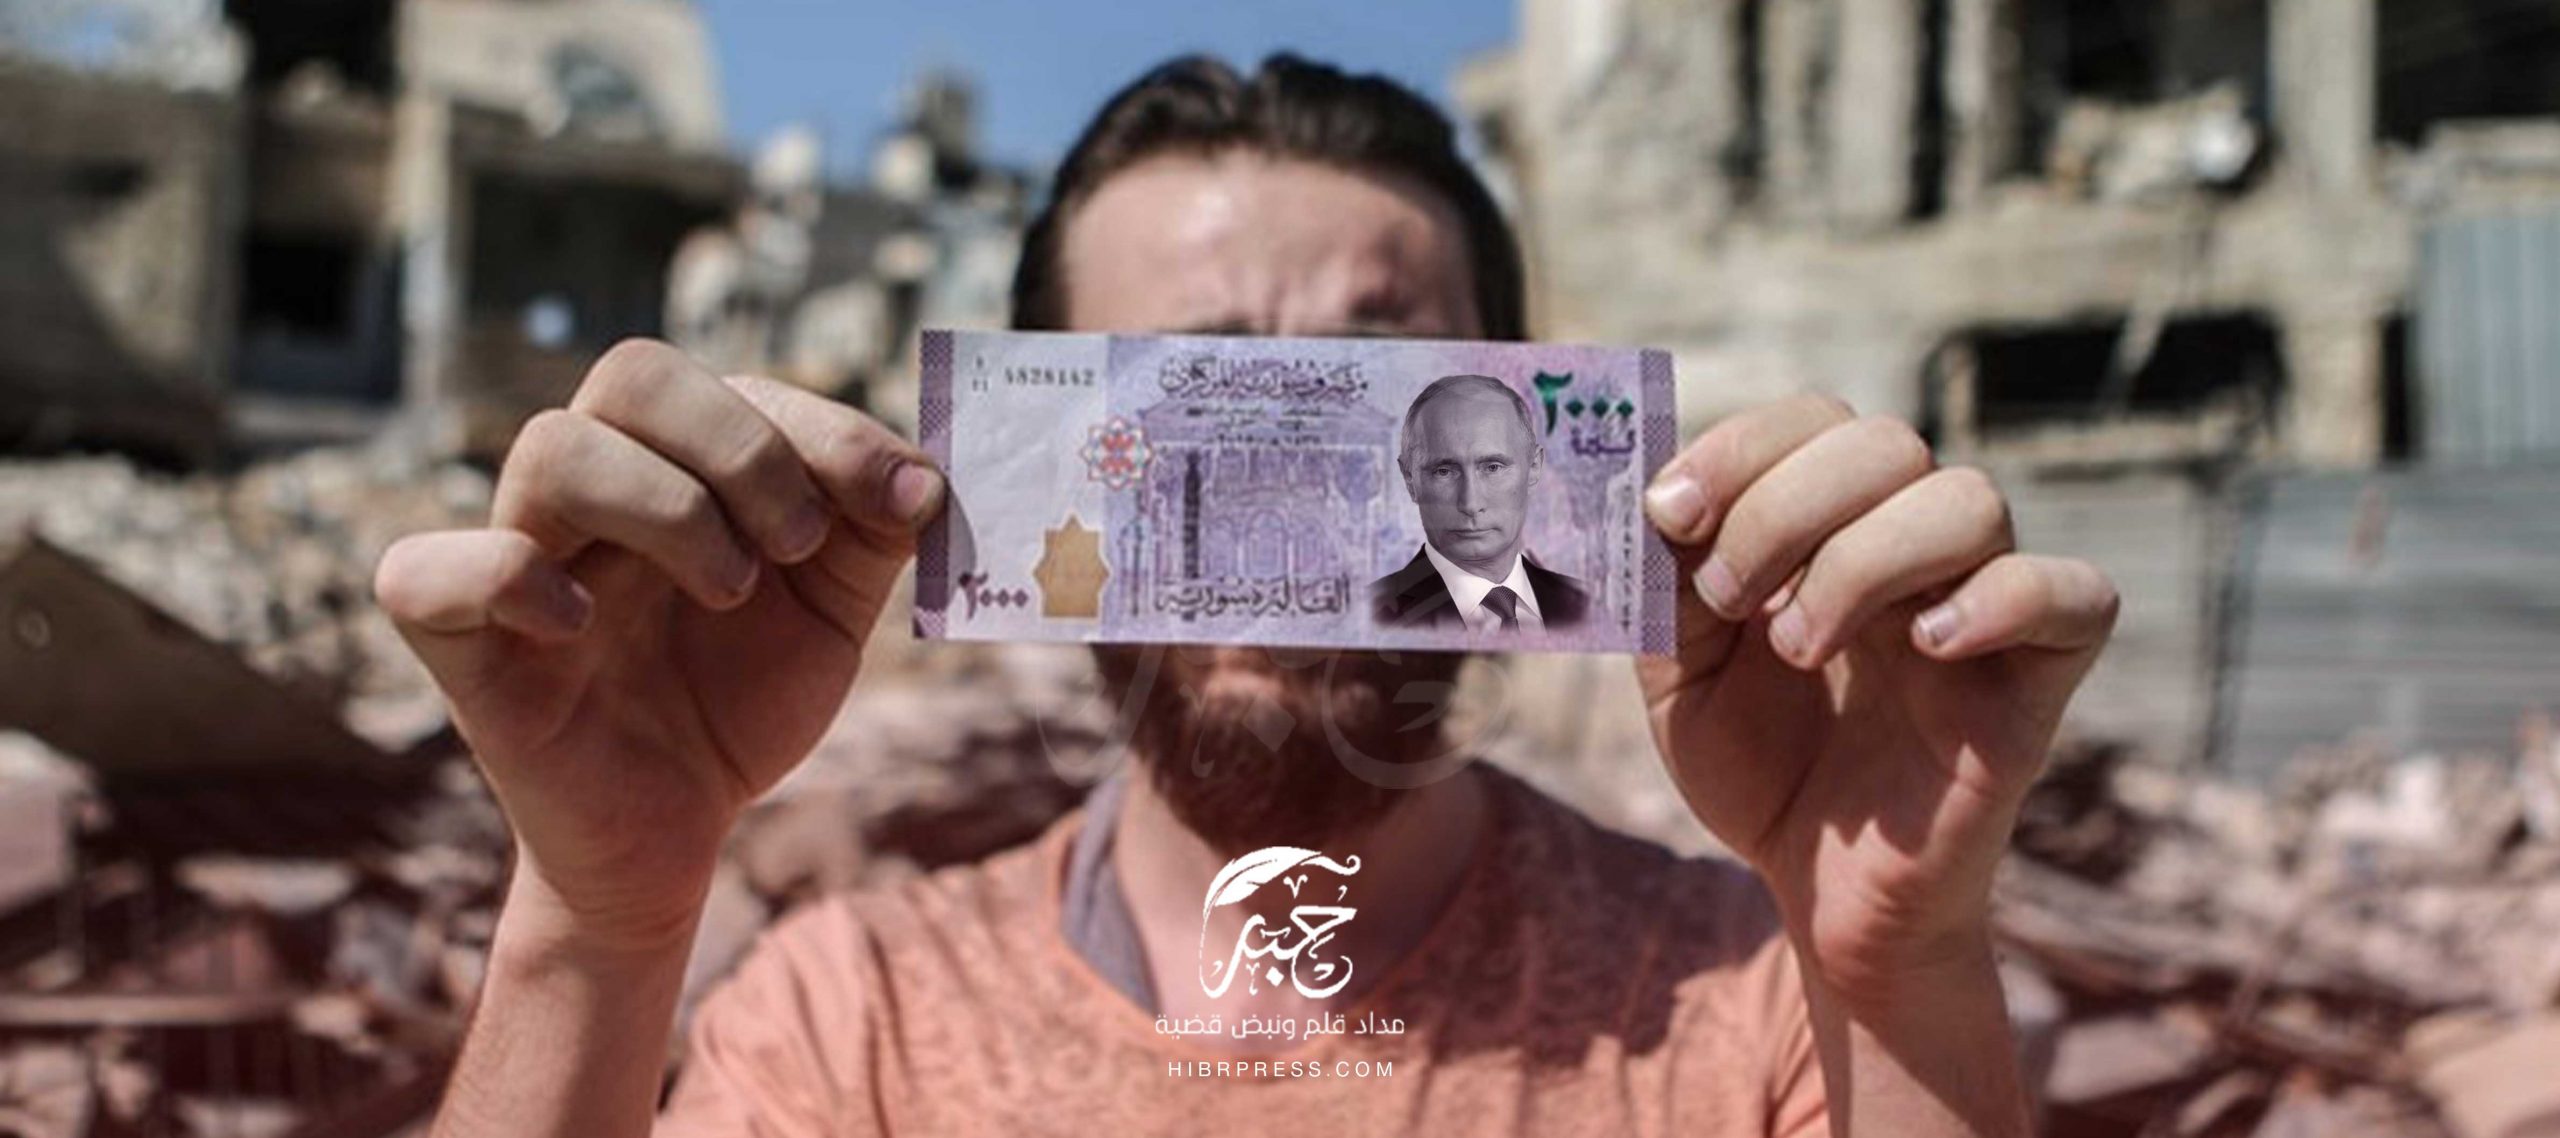 سجلت الليرة السورية تفاوتًا بأسعار صرفها أمام الدولار الأمريكي بين المحافظات السورية في افتتاح اسواق الصرف لهذا اليوم الأربعاء